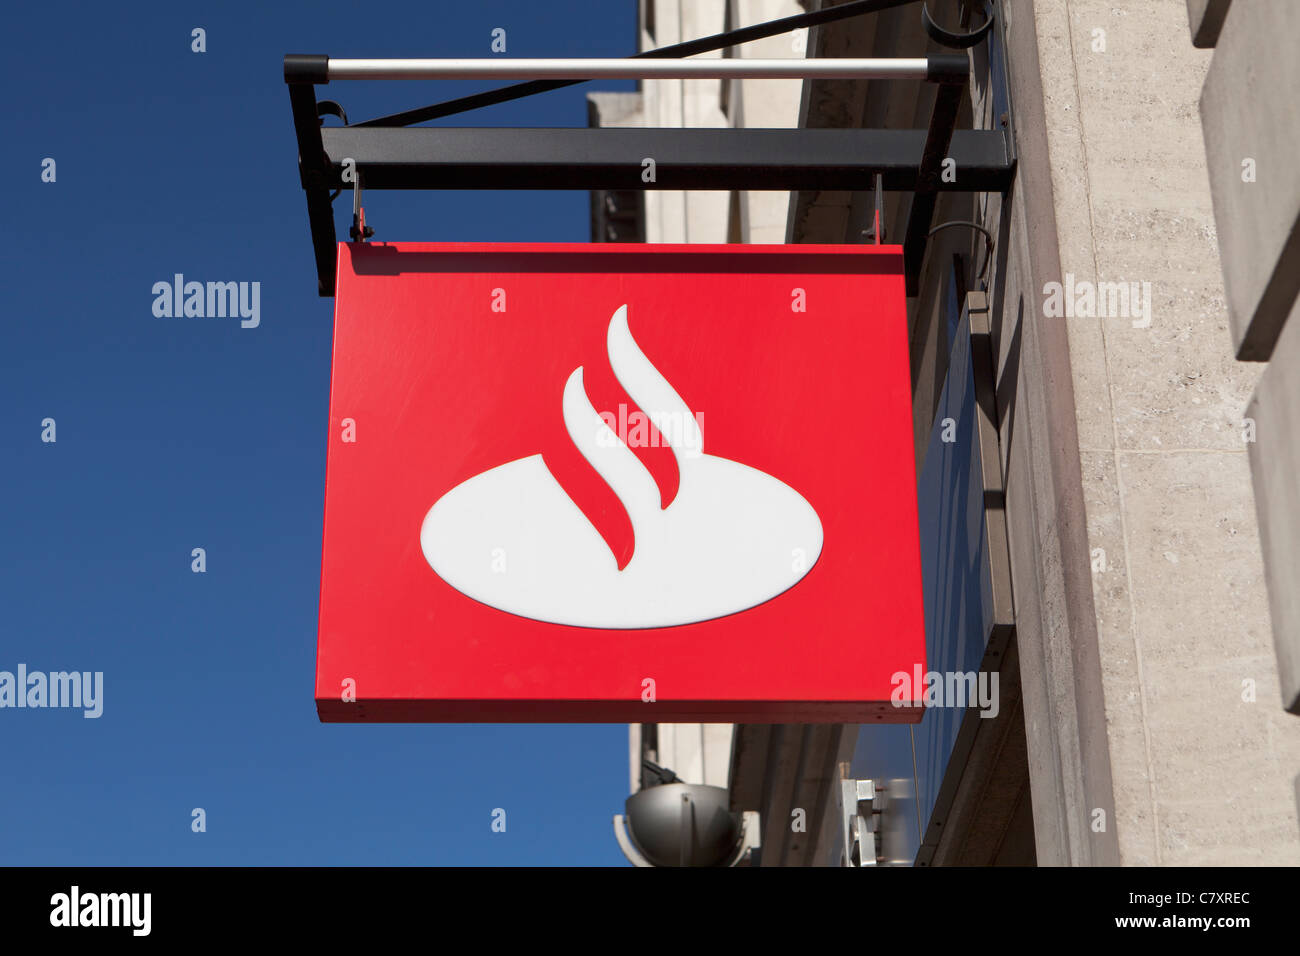 Santander bank sign, UK Stock Photo